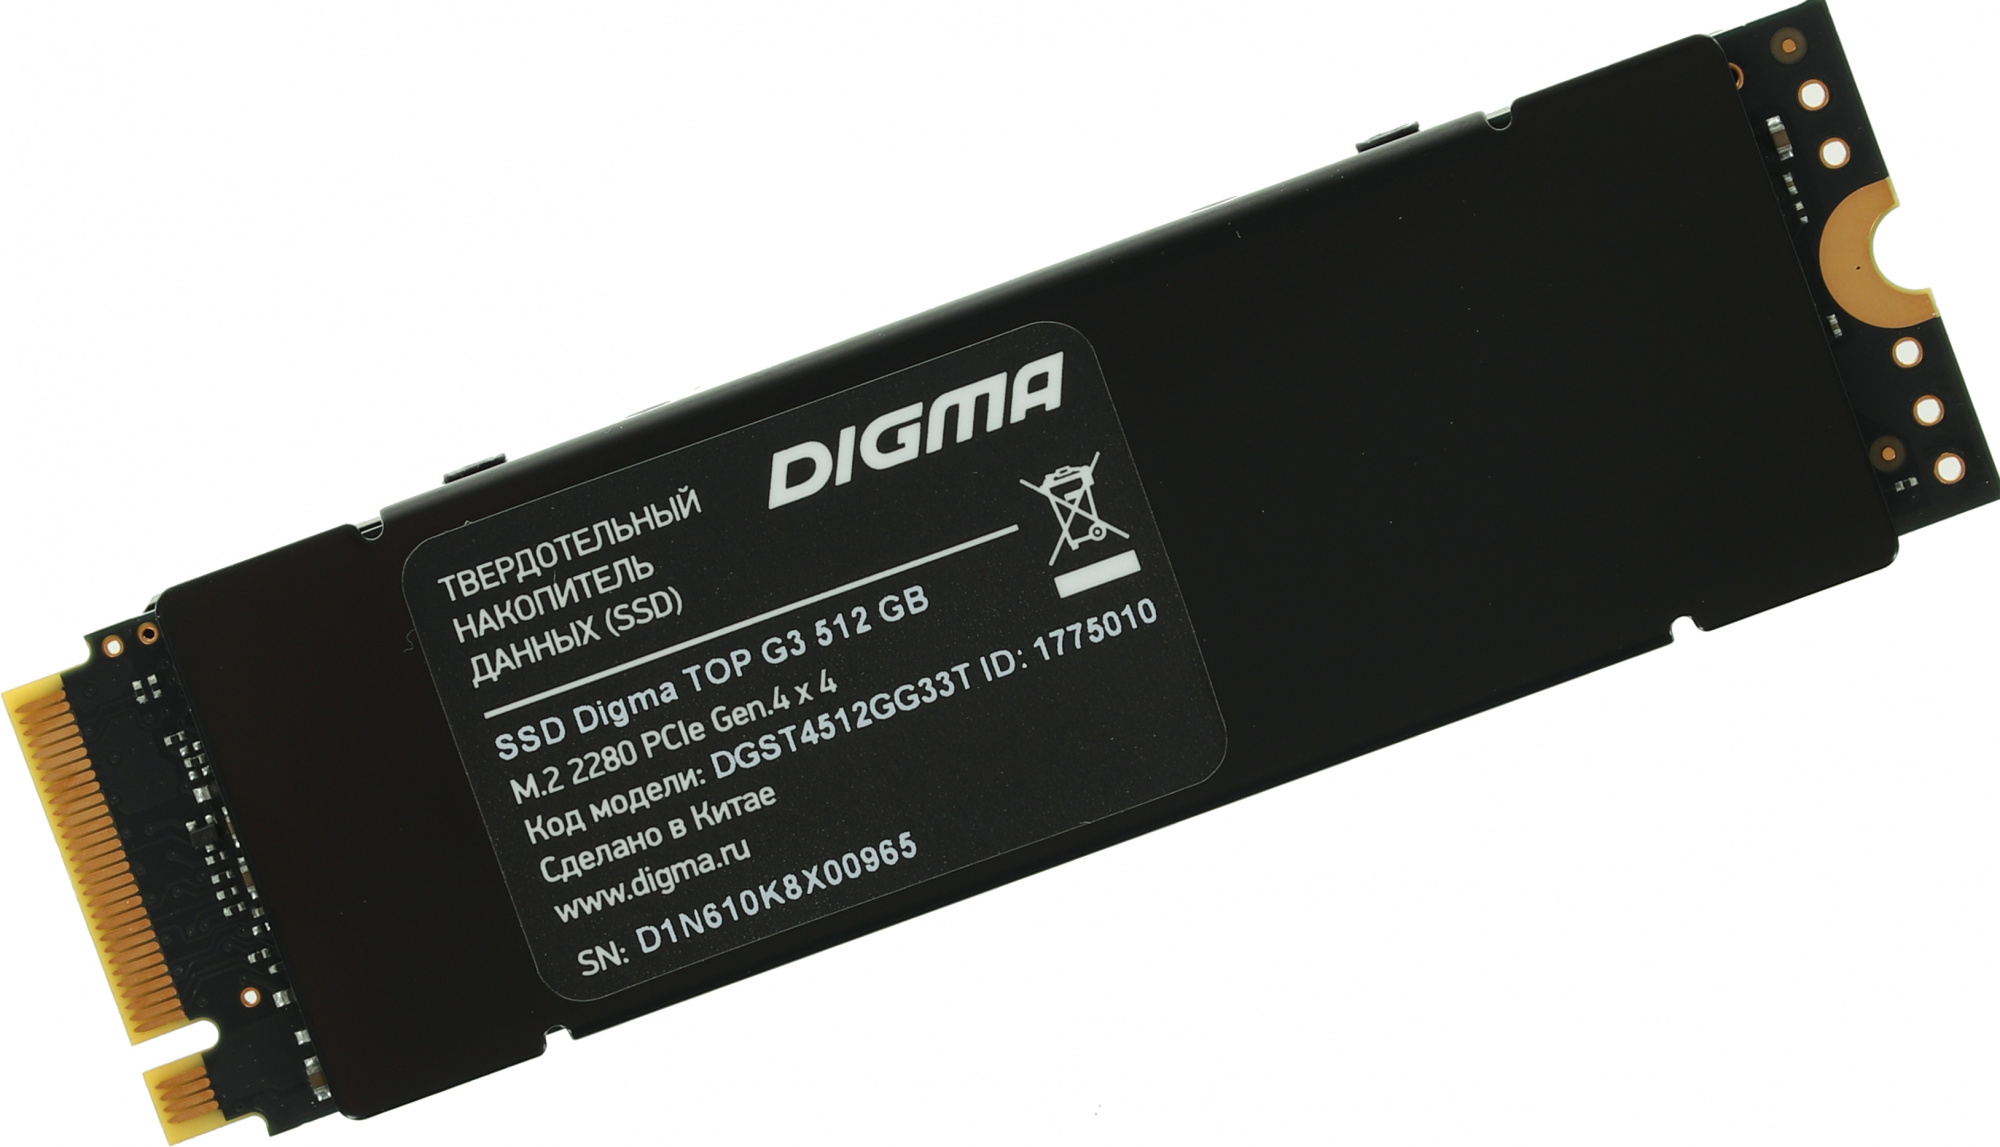 SSD  Digma Top G3 DGST4512GG33T 512, M.2 2280, PCI-E 4.0 x4,  NVMe,  M.2,  rtl